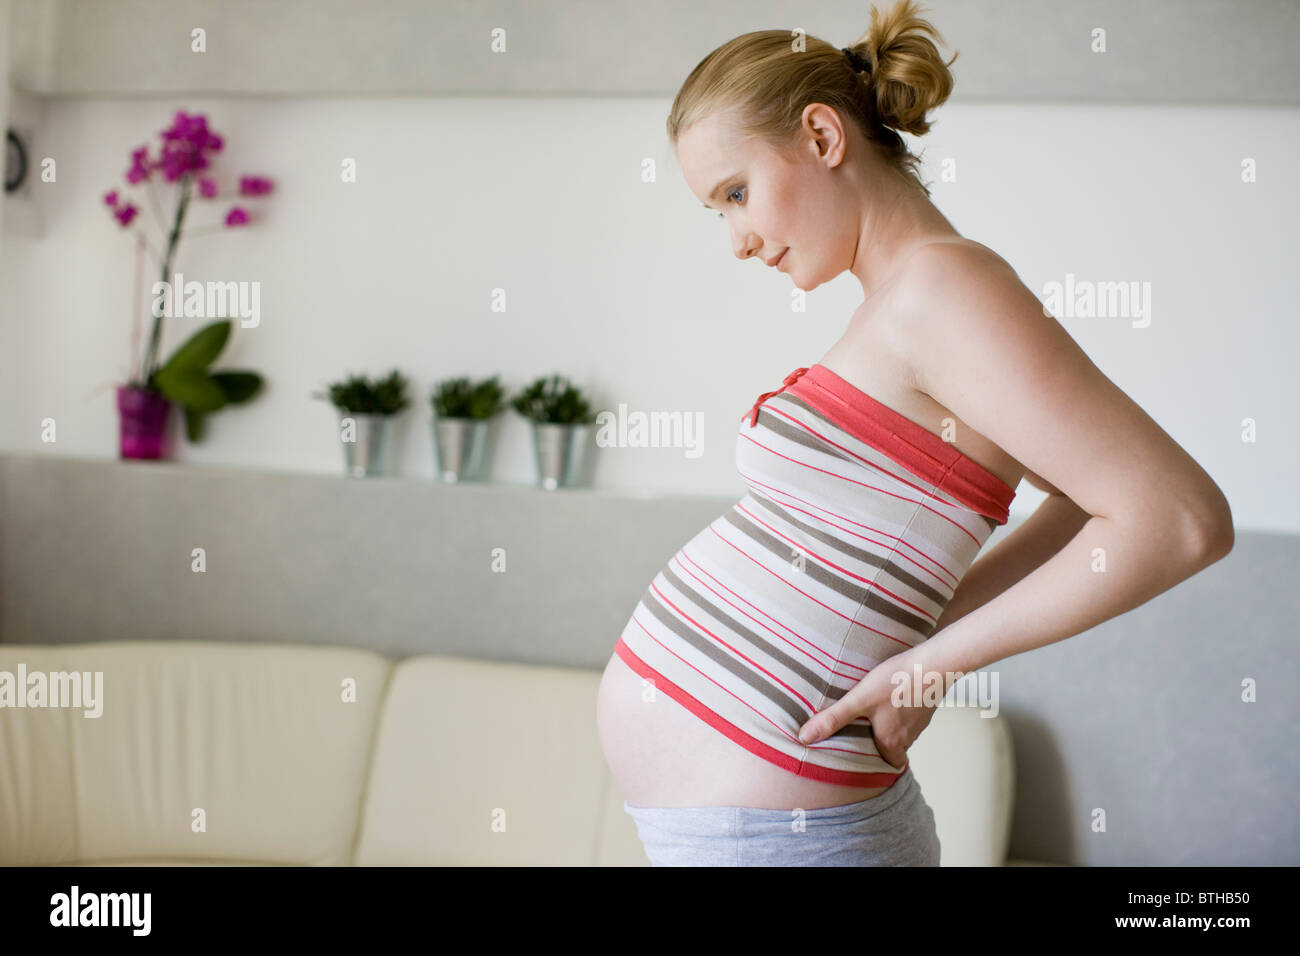 Роды боль в спине. Молодая мамочка болит спина. Осанка во время беременности. Фото беременной девушки и боль в пояснице. Первые месячные после беременности болит спина.